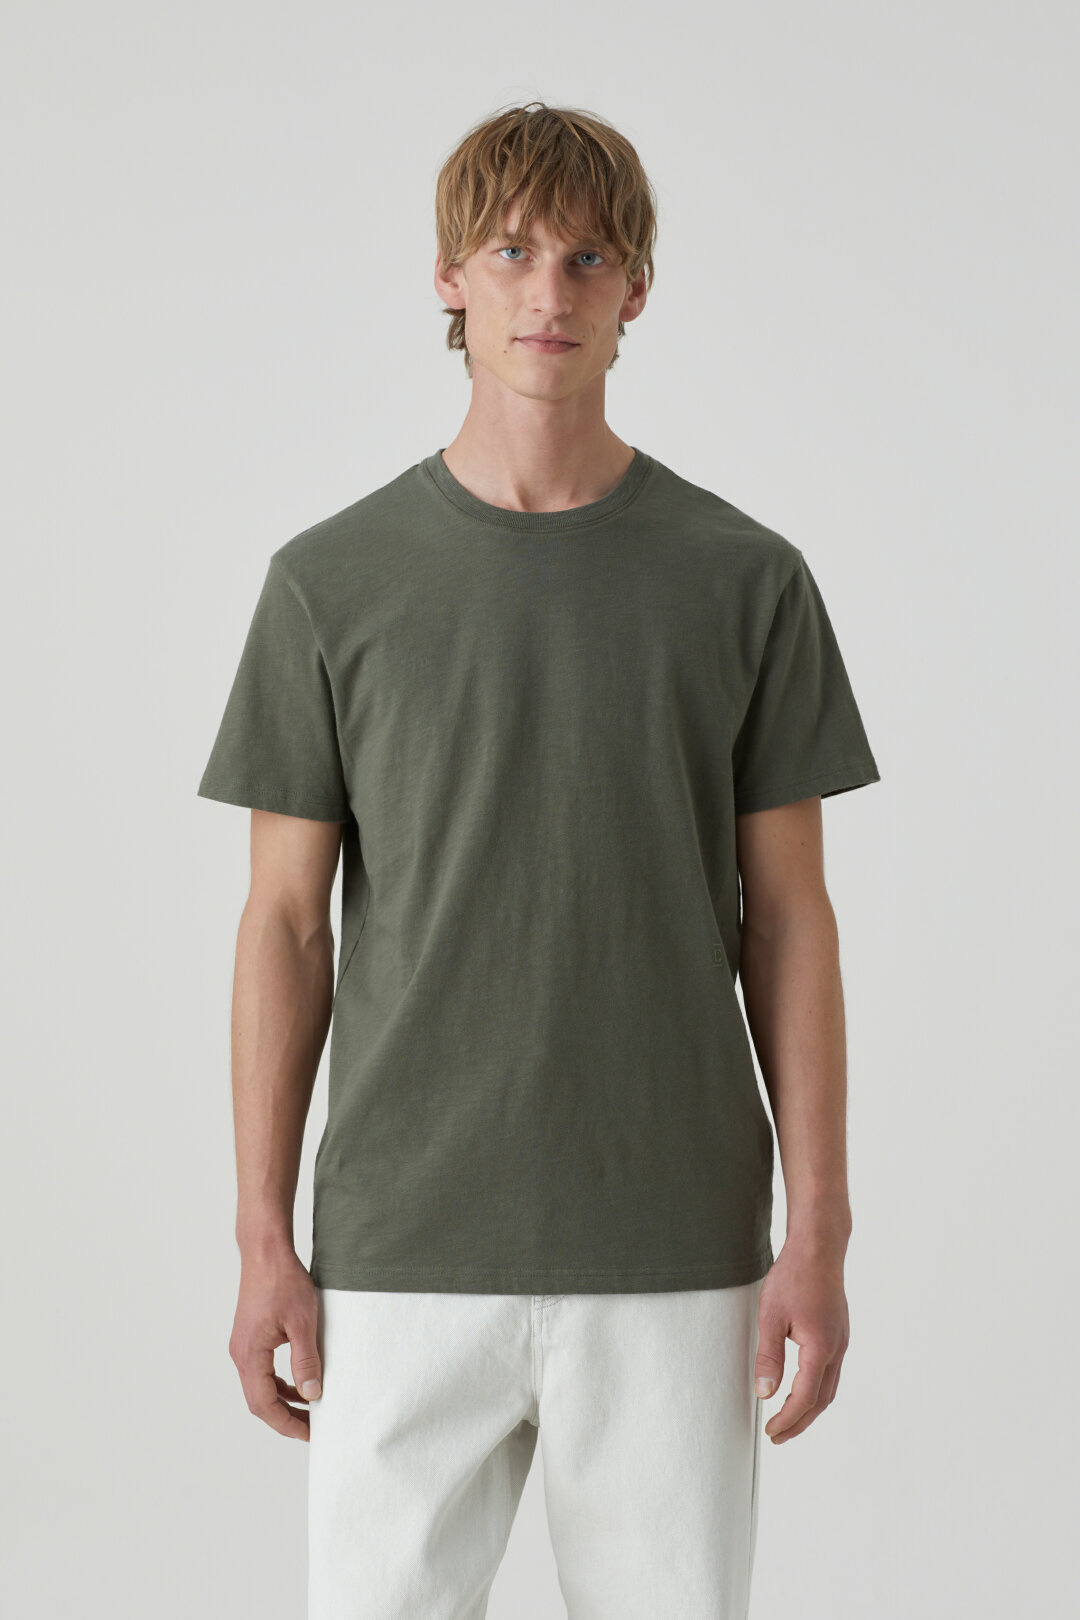 t-shirt pine green-1